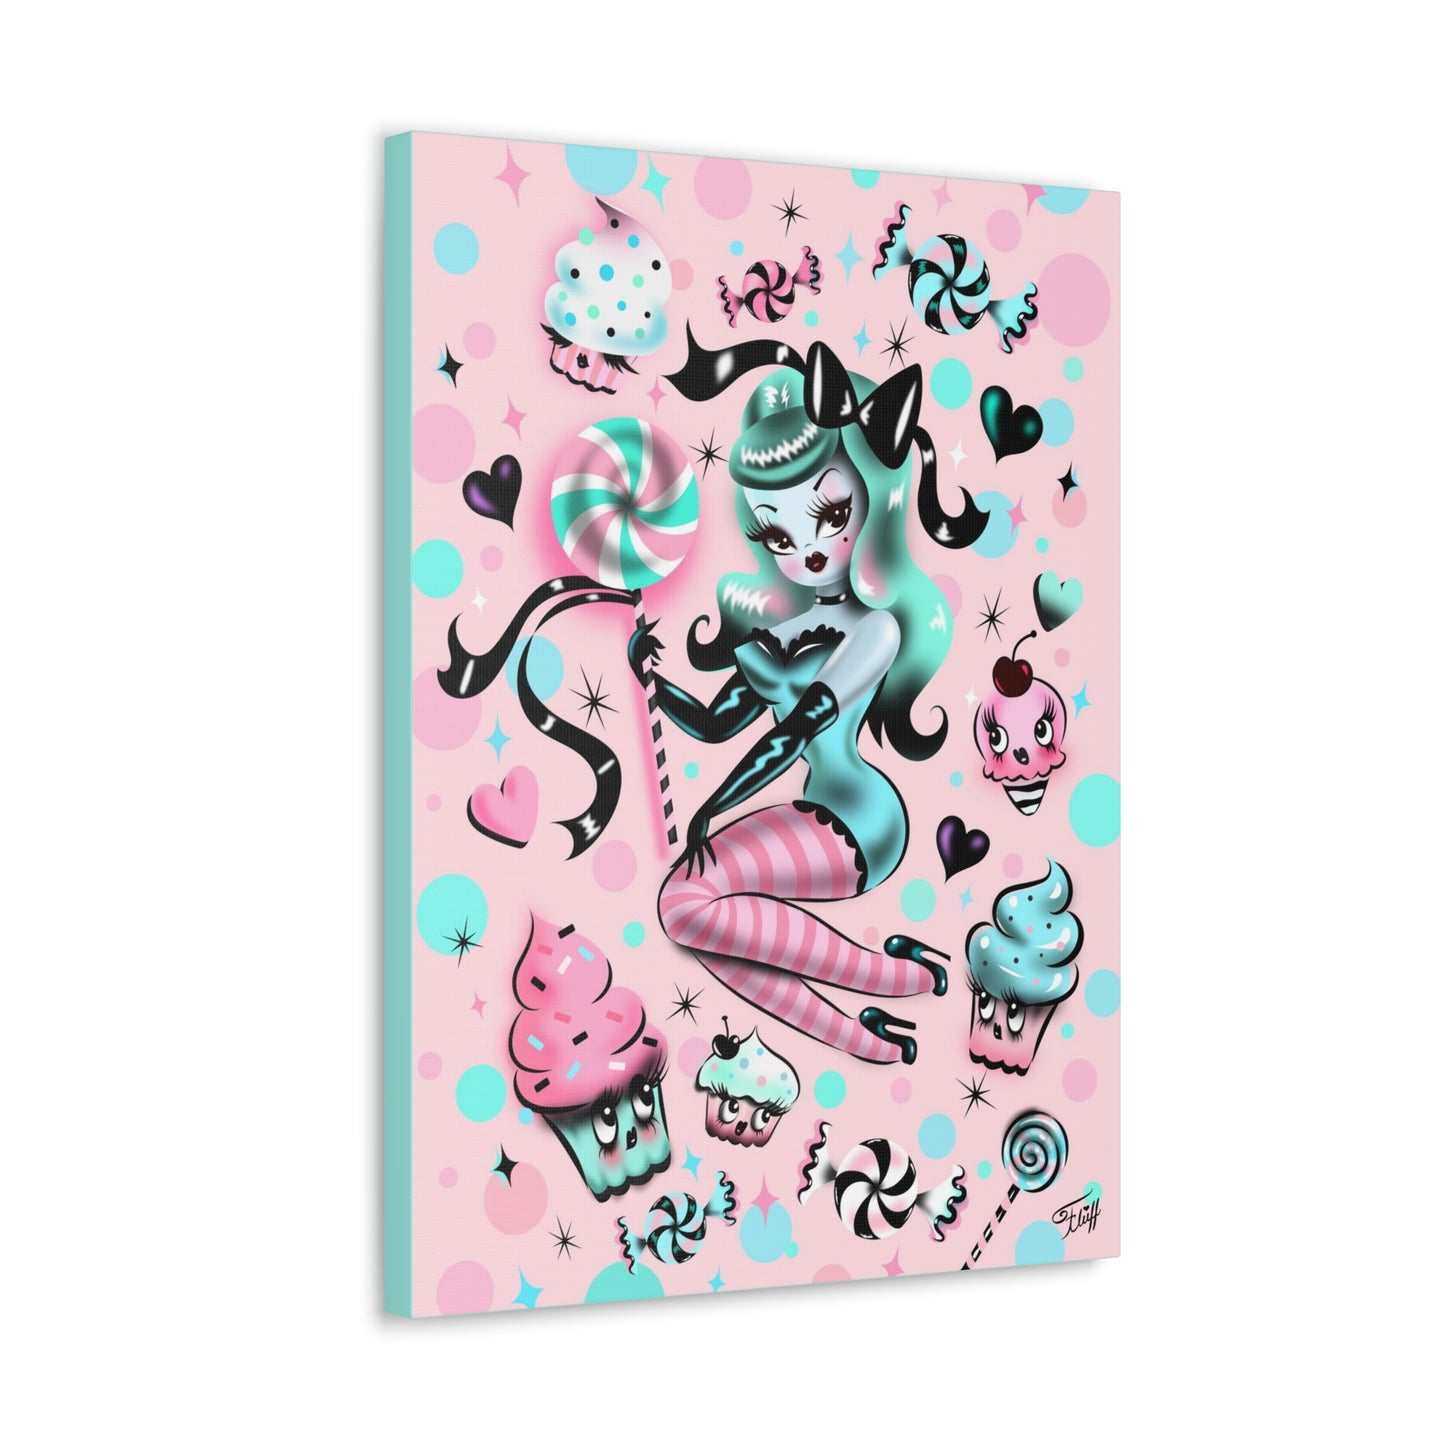 Mint Sugar Doll • Canvas Gallery Wrap